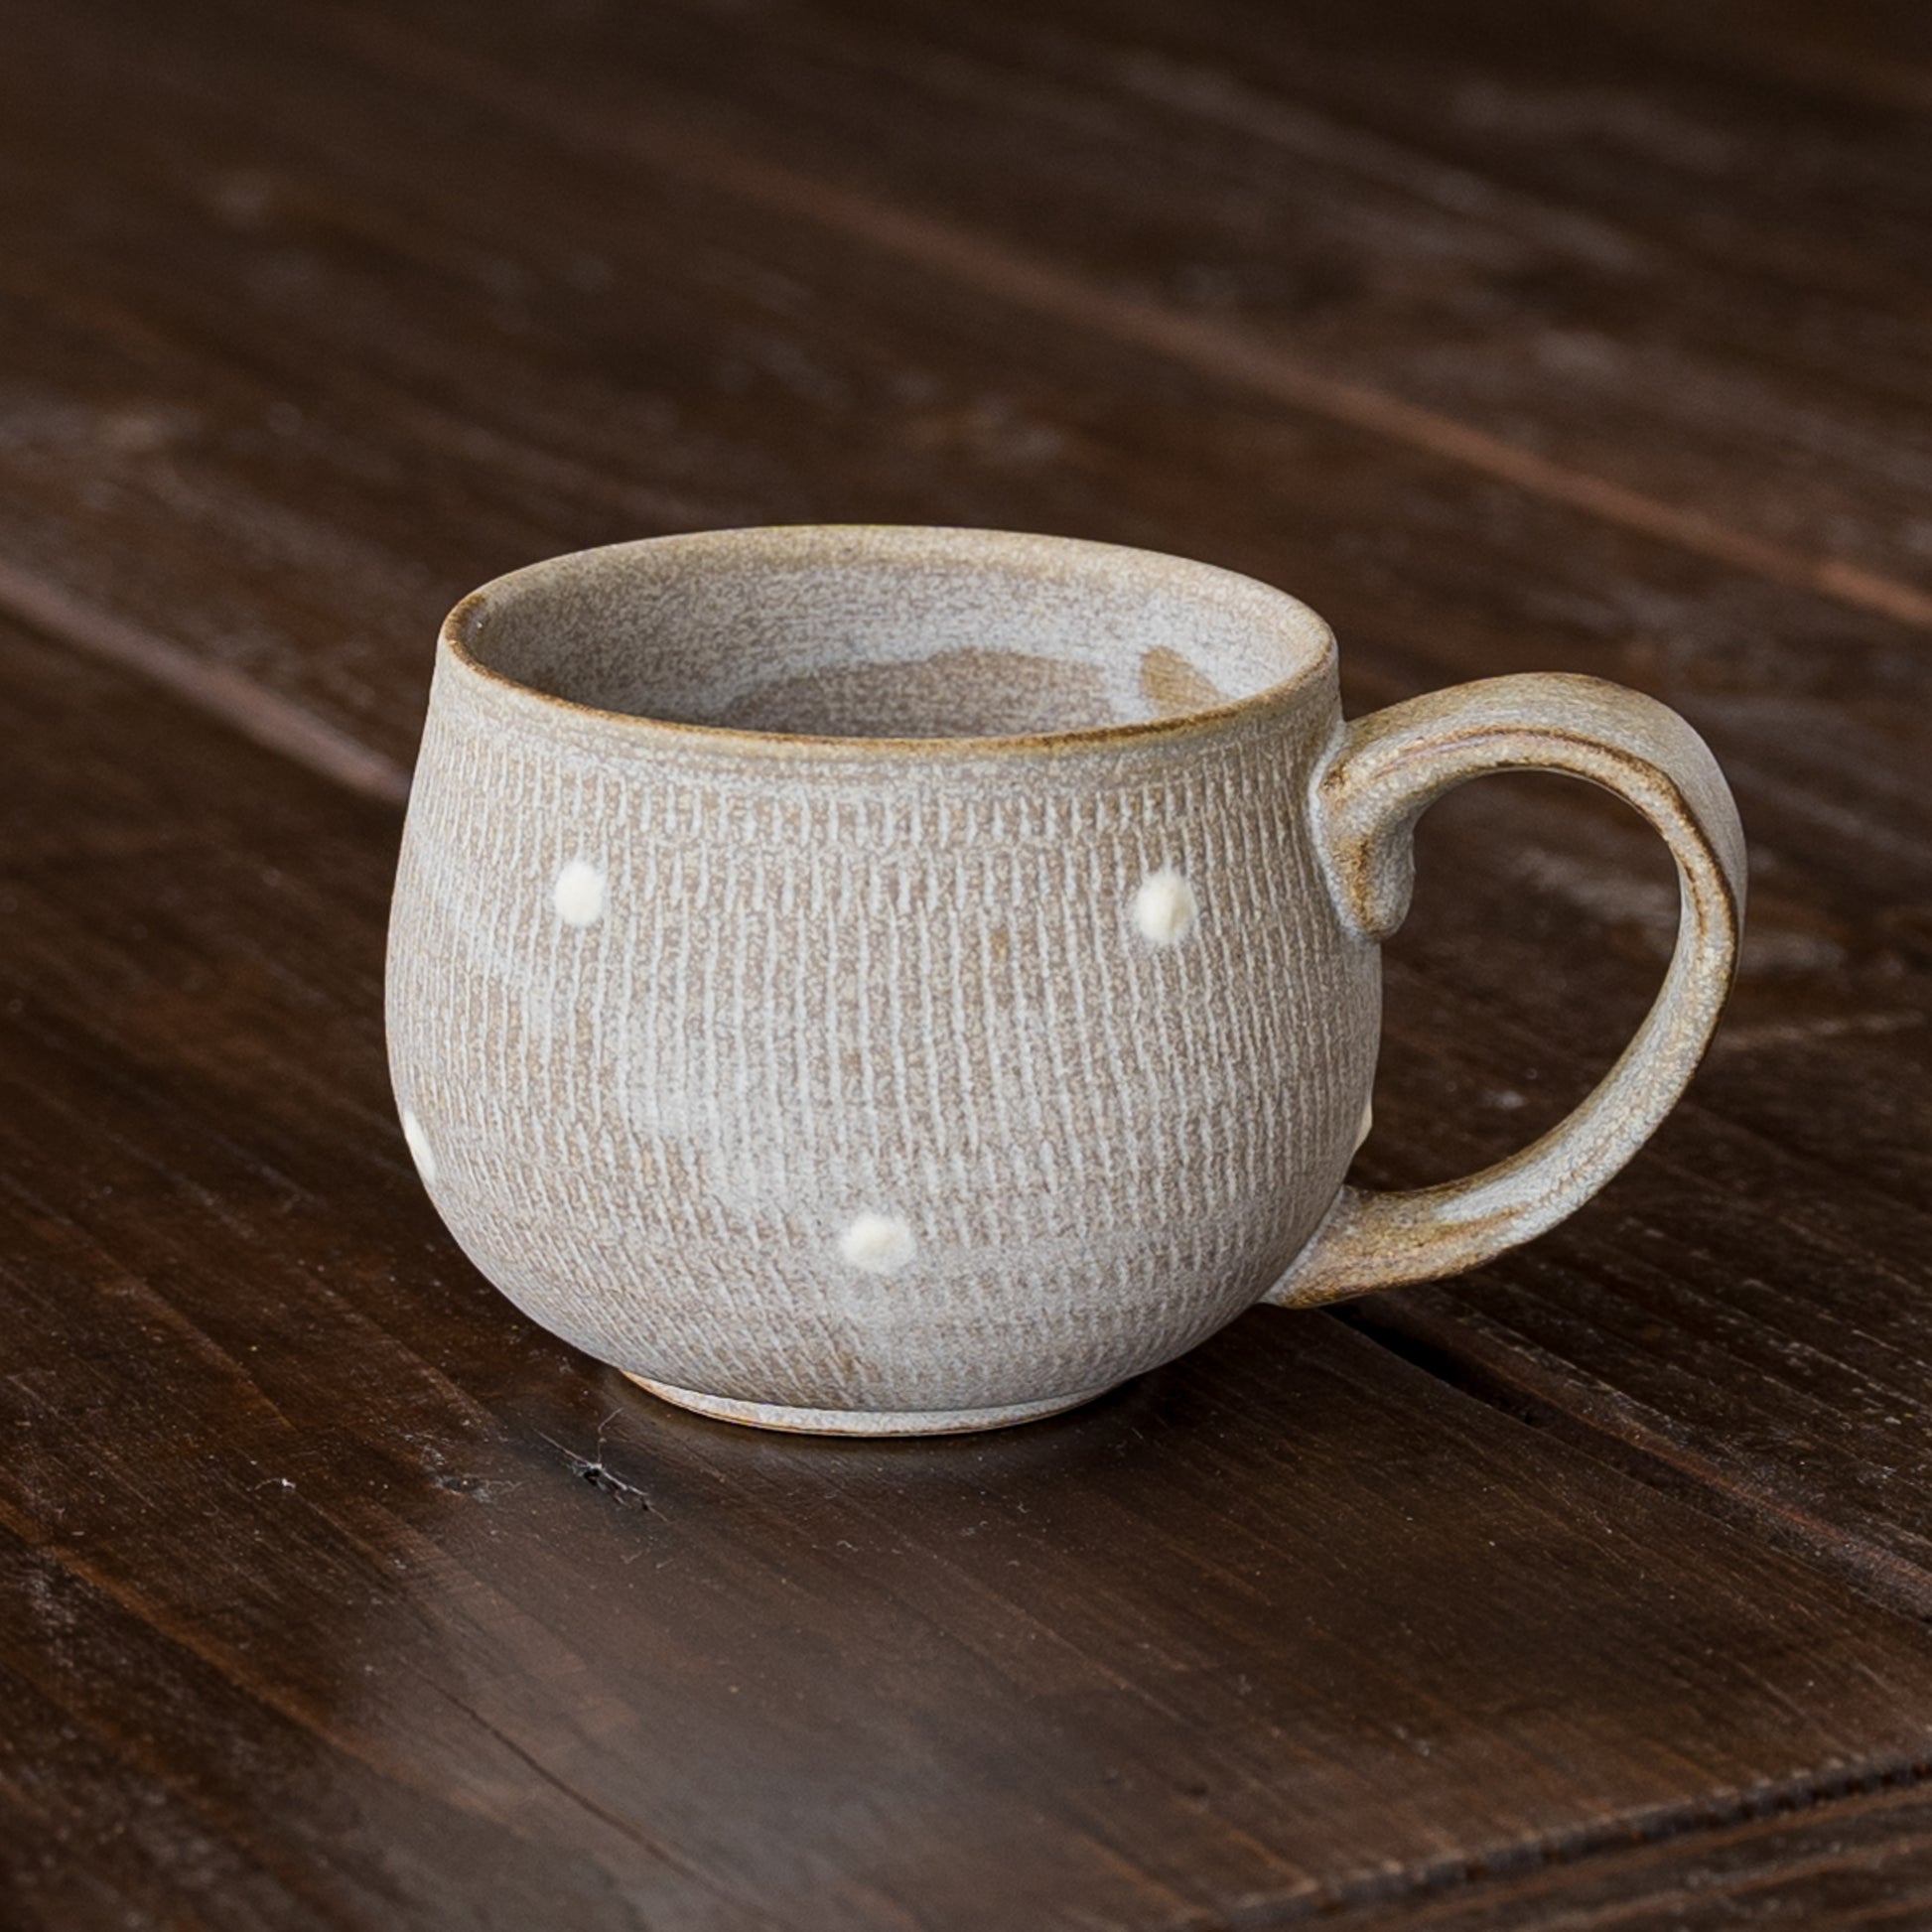 落ち着いたグレーと優し気なドット柄が素敵な小石原焼翁明窯元のコーヒーカップ